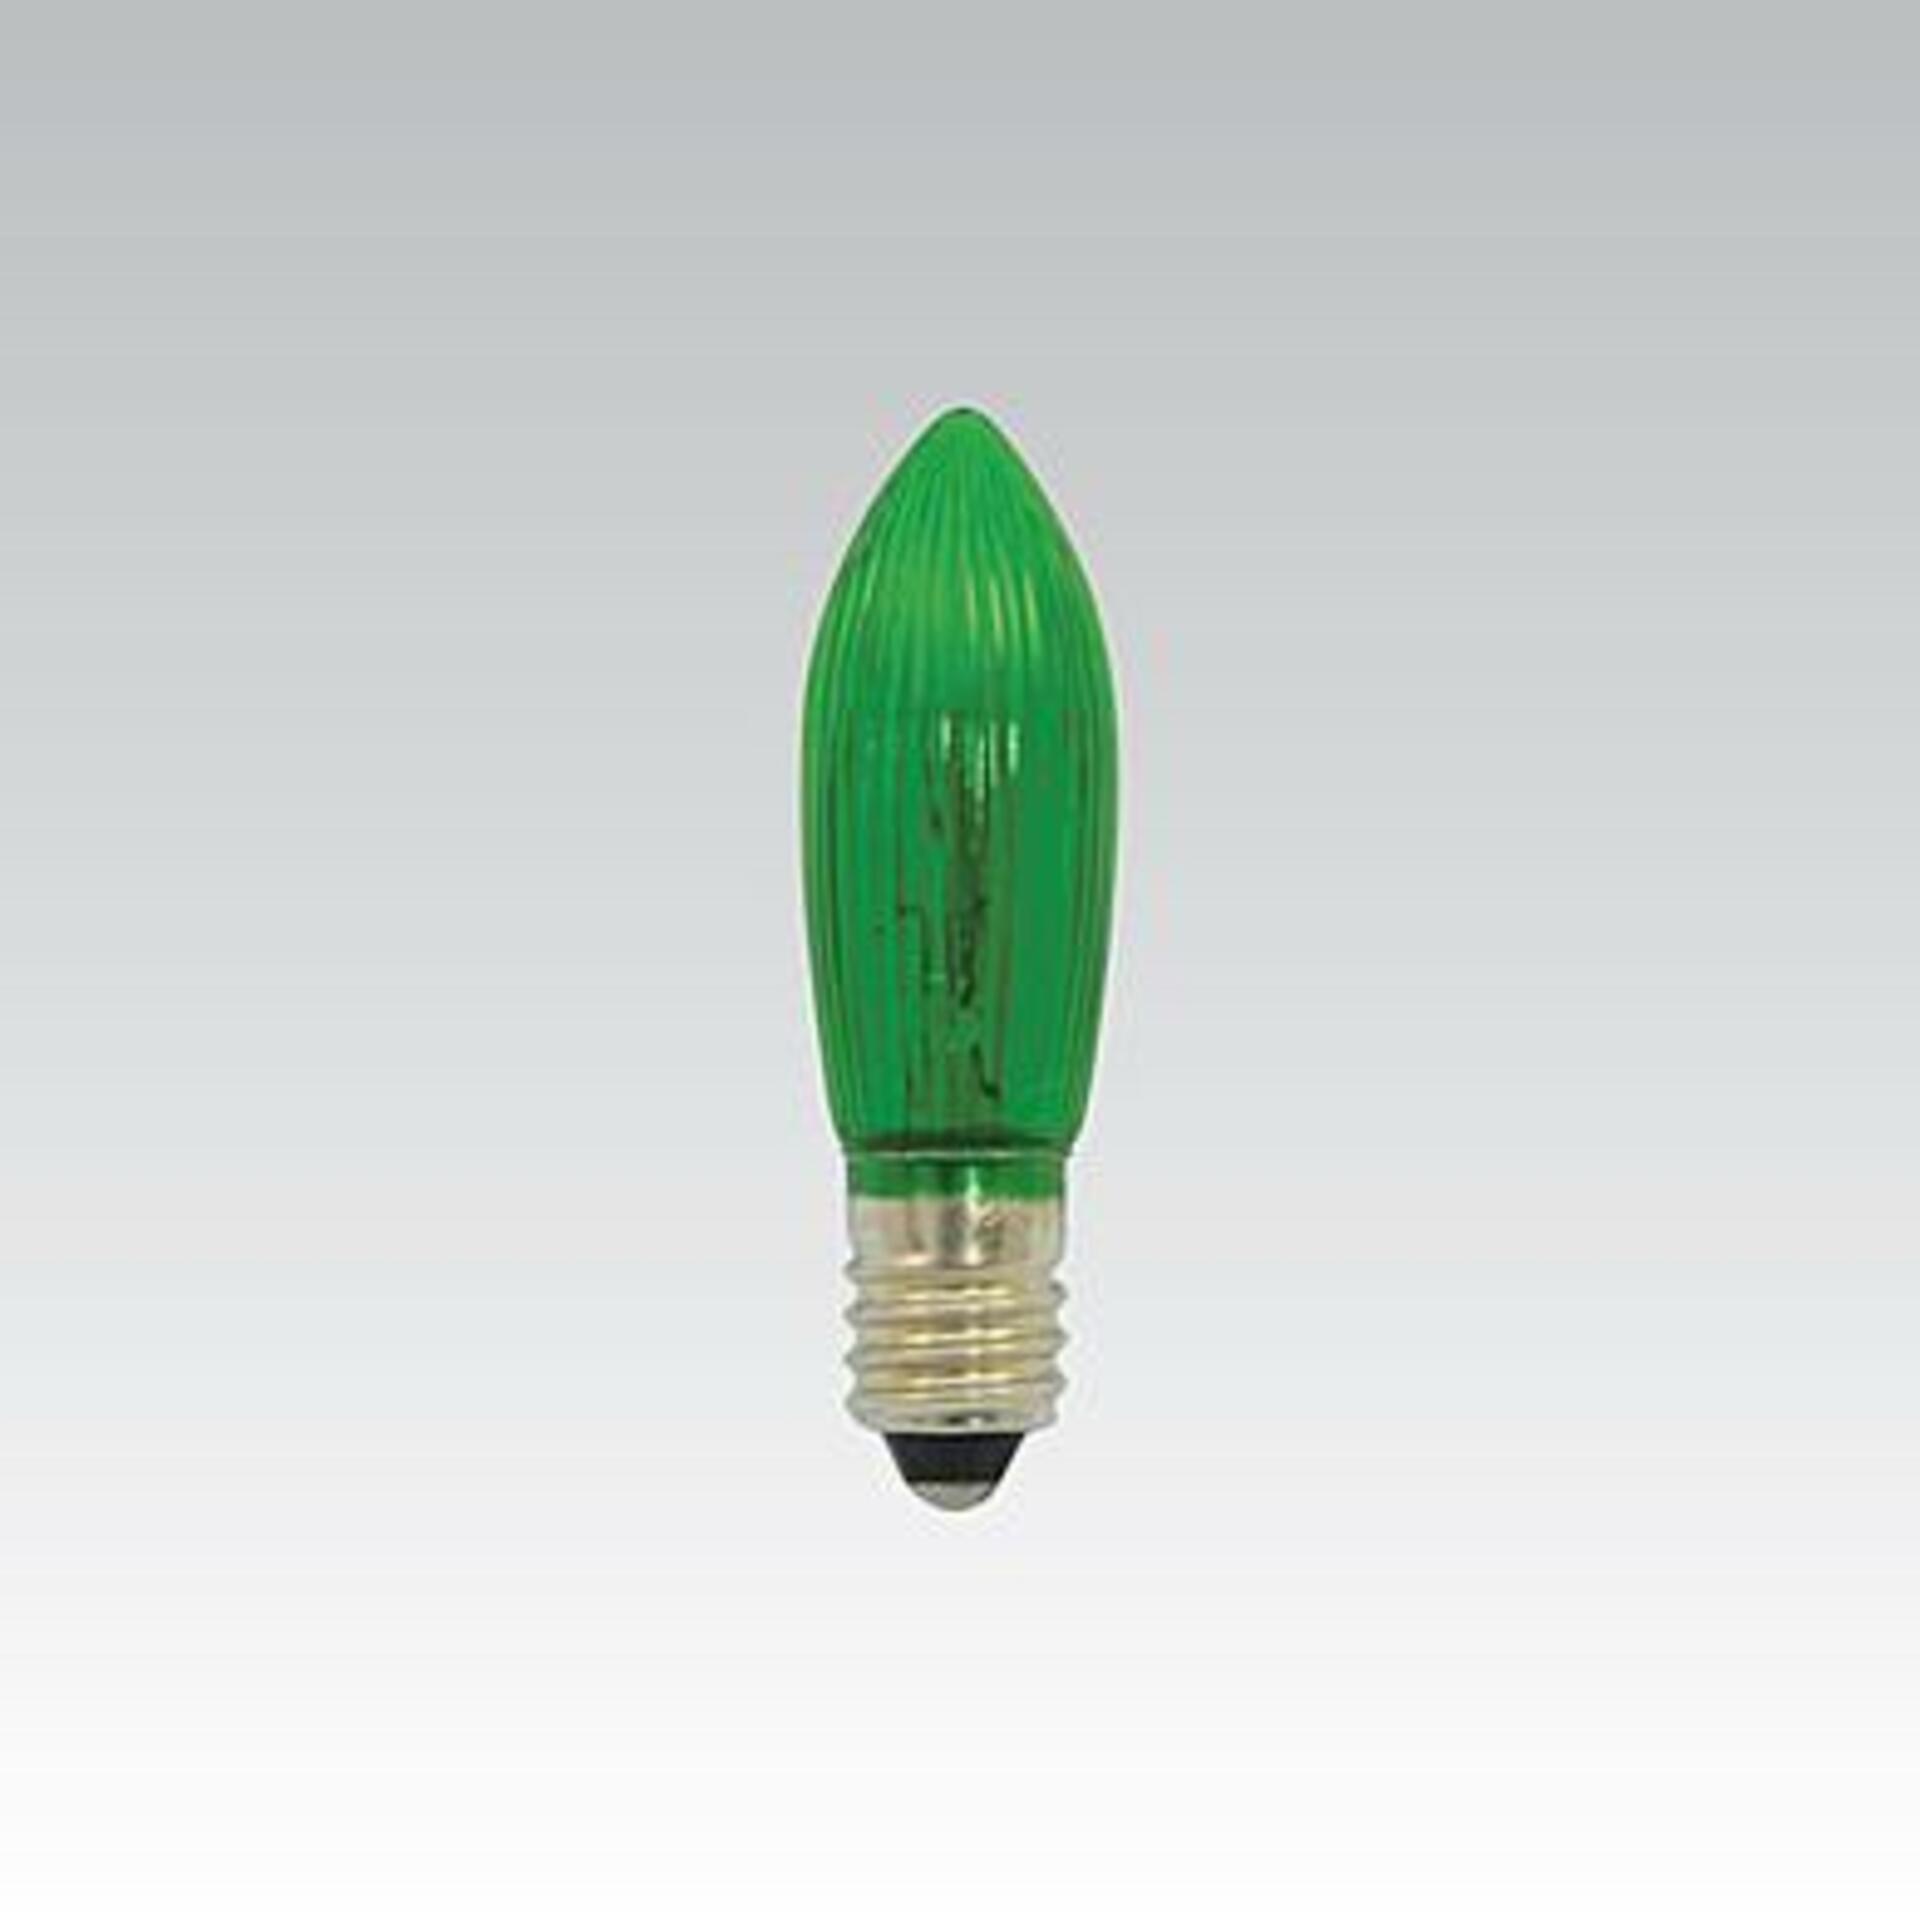 NBB Žárovka vánoční E10 20V 3W zelená 374022000